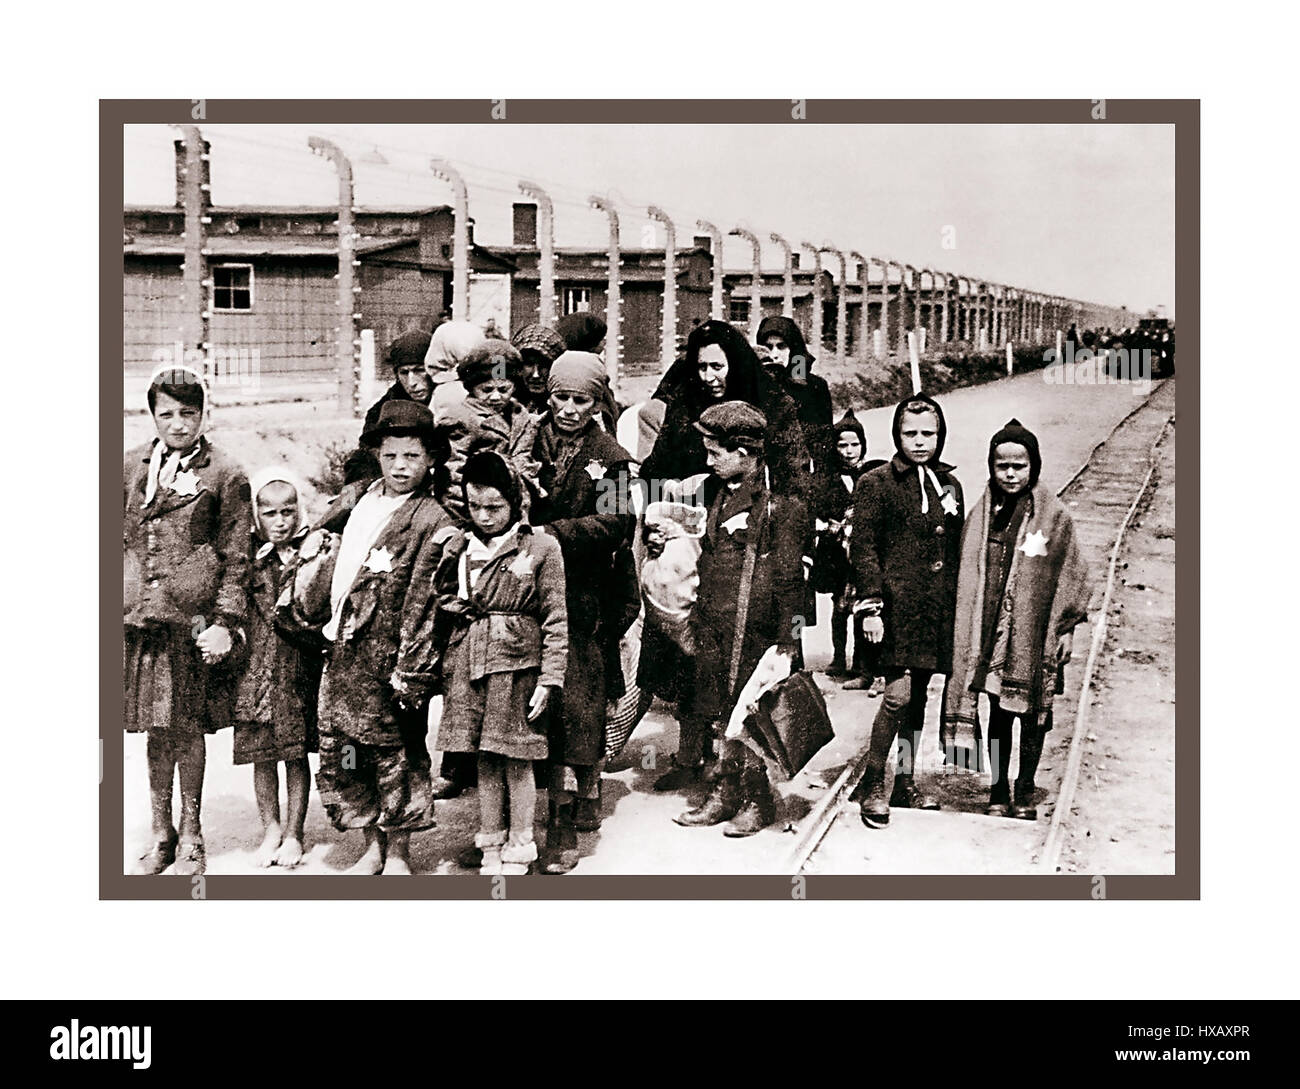 Auschwitz-Birkenau. Des enfants juifs portant des étoiles jaunes désignées par les nazis arrivent à Auschwitz-Birkenau. Un camp allemand de concentration et d'extermination nazi en WW2. Les enfants juifs constituent le plus grand groupe de personnes déportées dans le camp. Ils y ont été envoyés avec des adultes, à partir du début de 1942, dans le cadre de la « solution finale de la question juive » La destruction totale de la population juive d'Europe... le camp de concentration d'Auschwitz était un réseau de camps de concentration allemands nazis et de camps d'extermination construits et exploités par le troisième Reich dans les zones polonaises annexées par l'Allemagne nazie en WW2 Banque D'Images